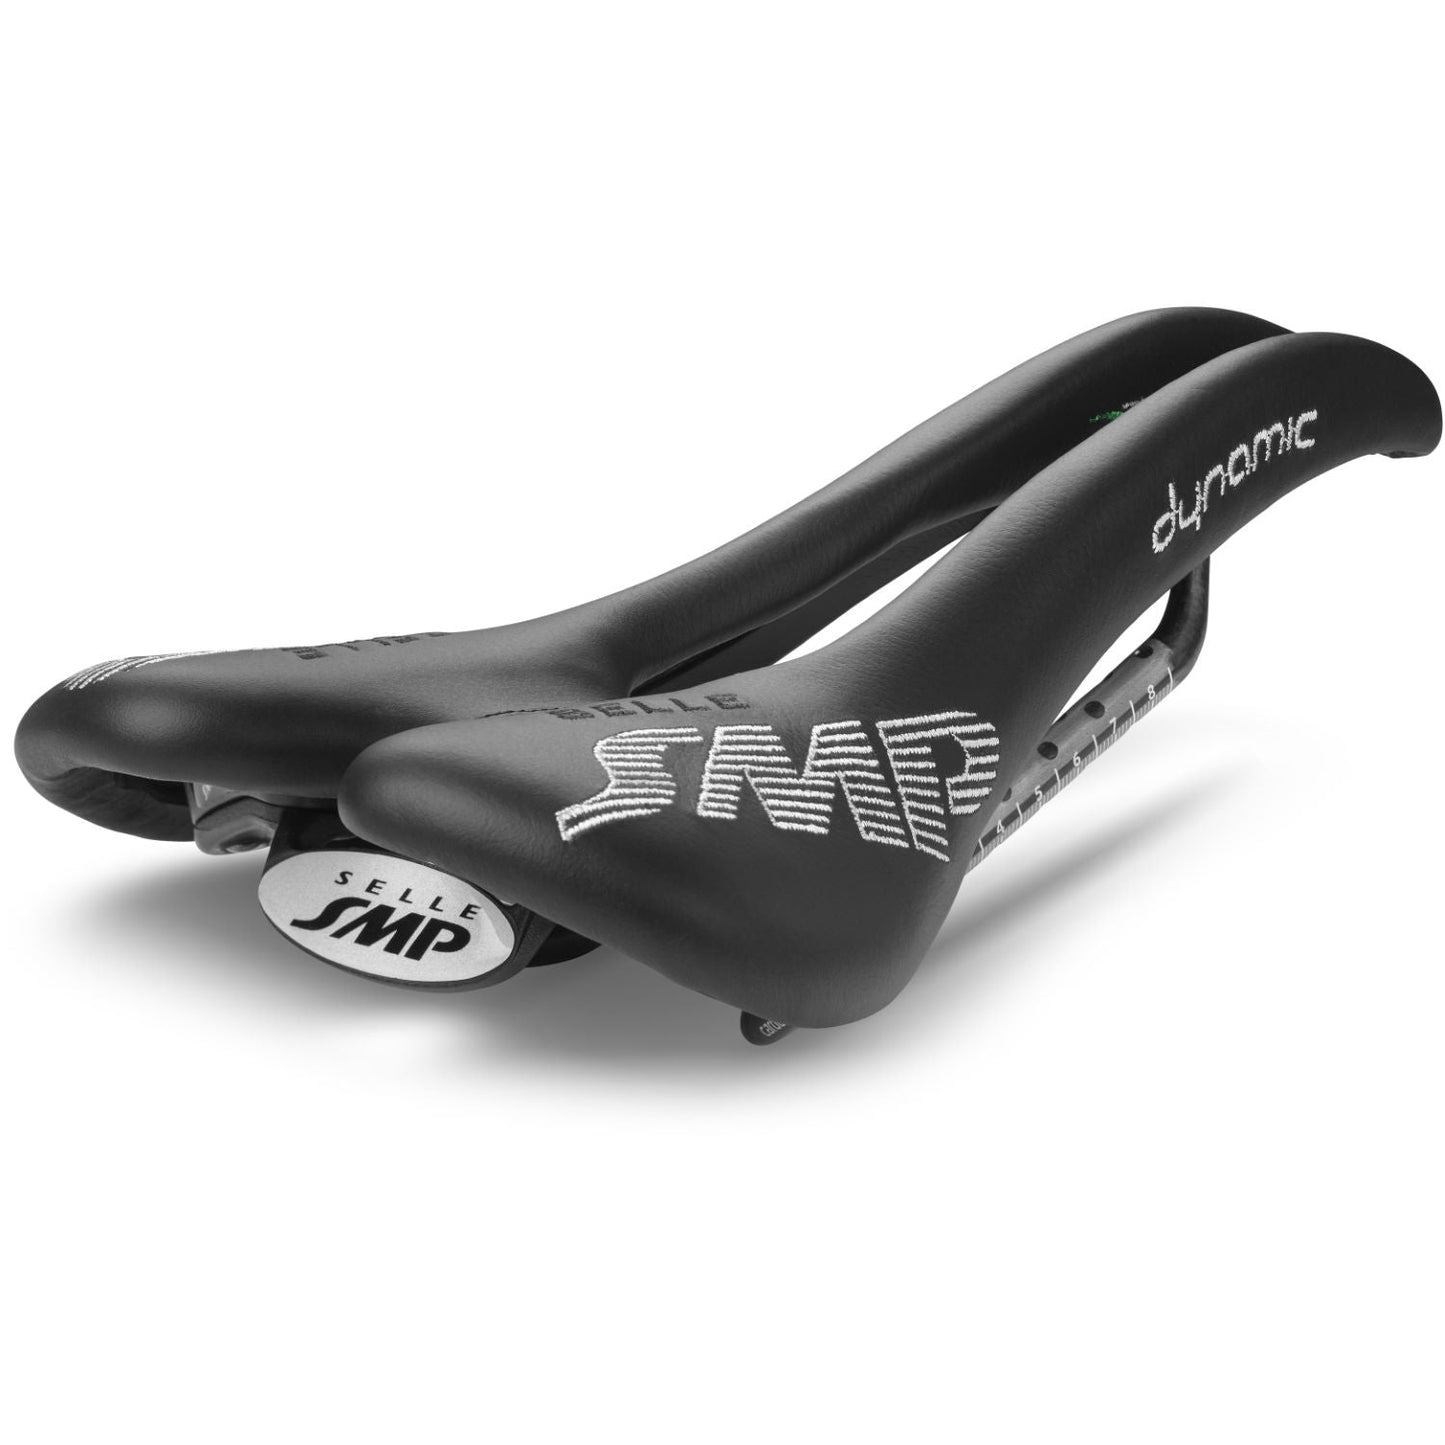 SMP Dynamic Carbon Rail saddle